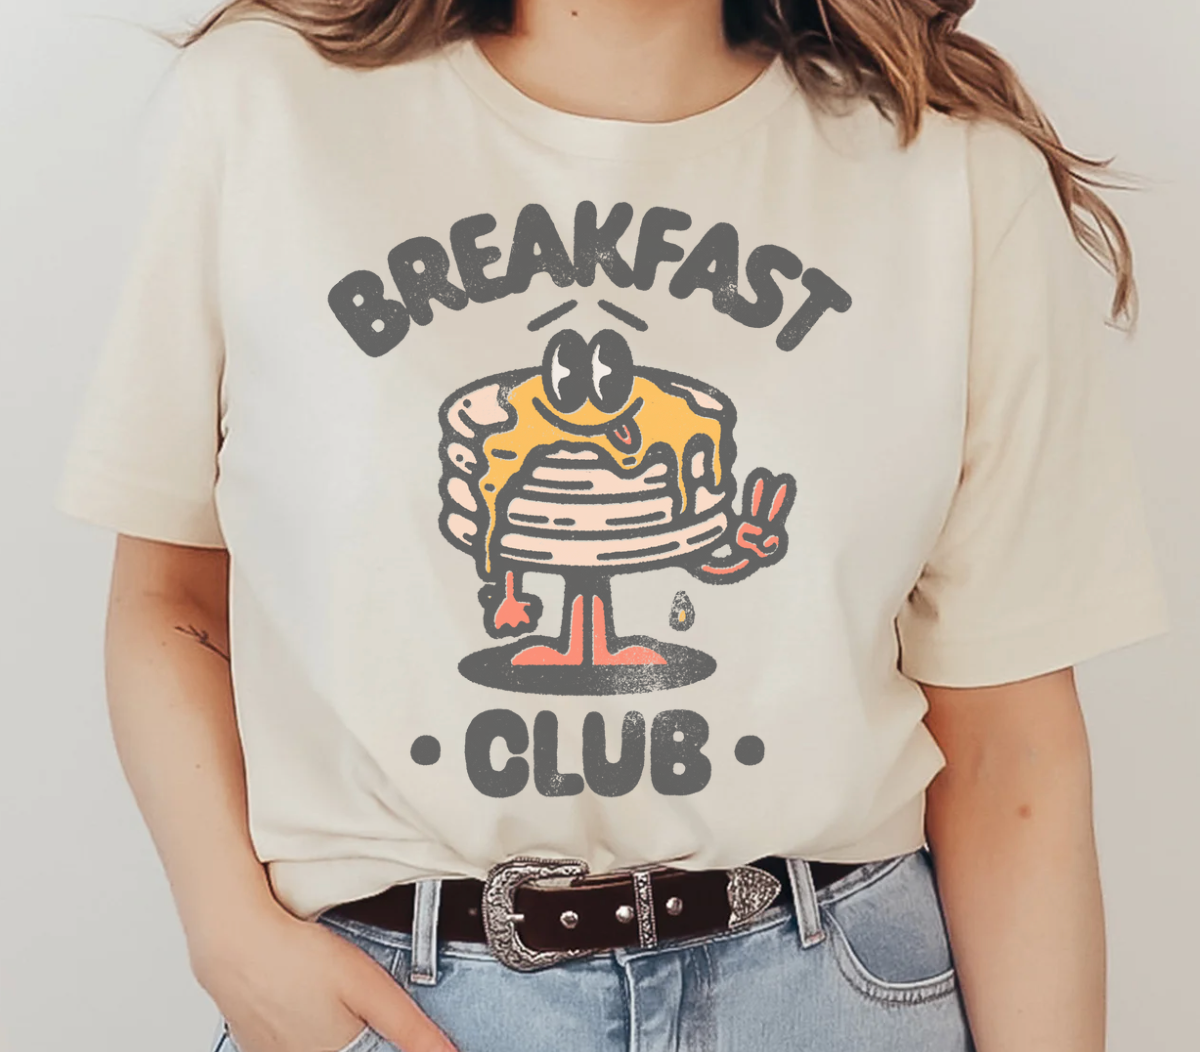 Breakfast Club Unisex Tee